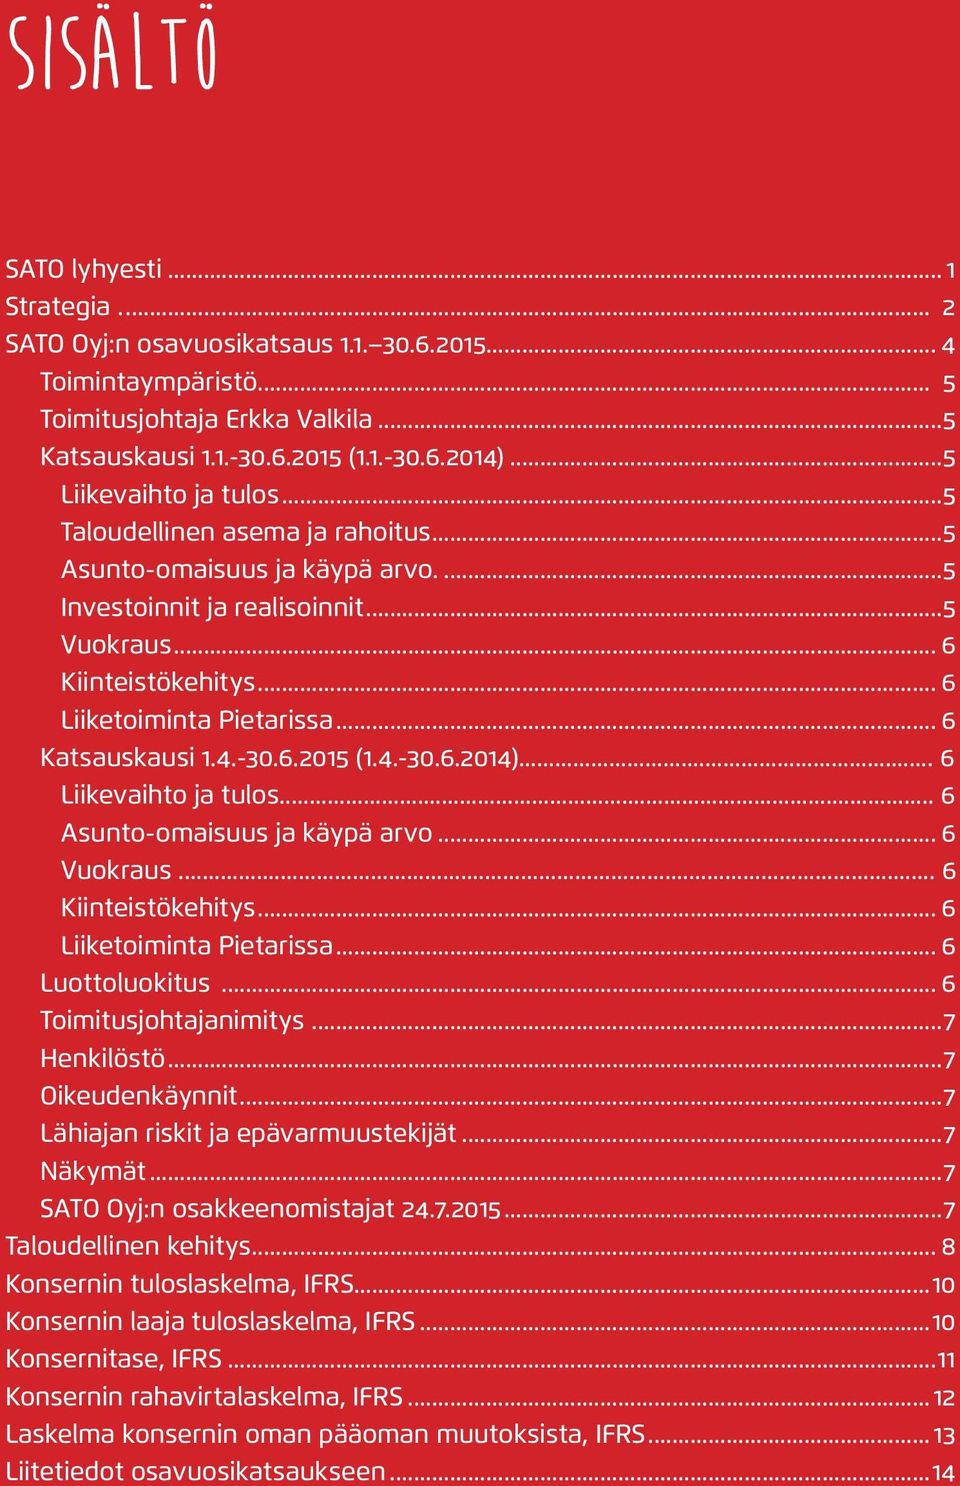 .. 6 Liiketoiminta Pietarissa... 6 Katsauskausi 1.4.-3.6.2 (1.4.-3.6.214)... 6 Liikevaihto ja tulos... 6 Asunto-omaisuus ja käypä arvo... 6 Vuokraus... 6 Kiinteistökehitys... 6 Liiketoiminta Pietarissa... 6 Luottoluokitus.